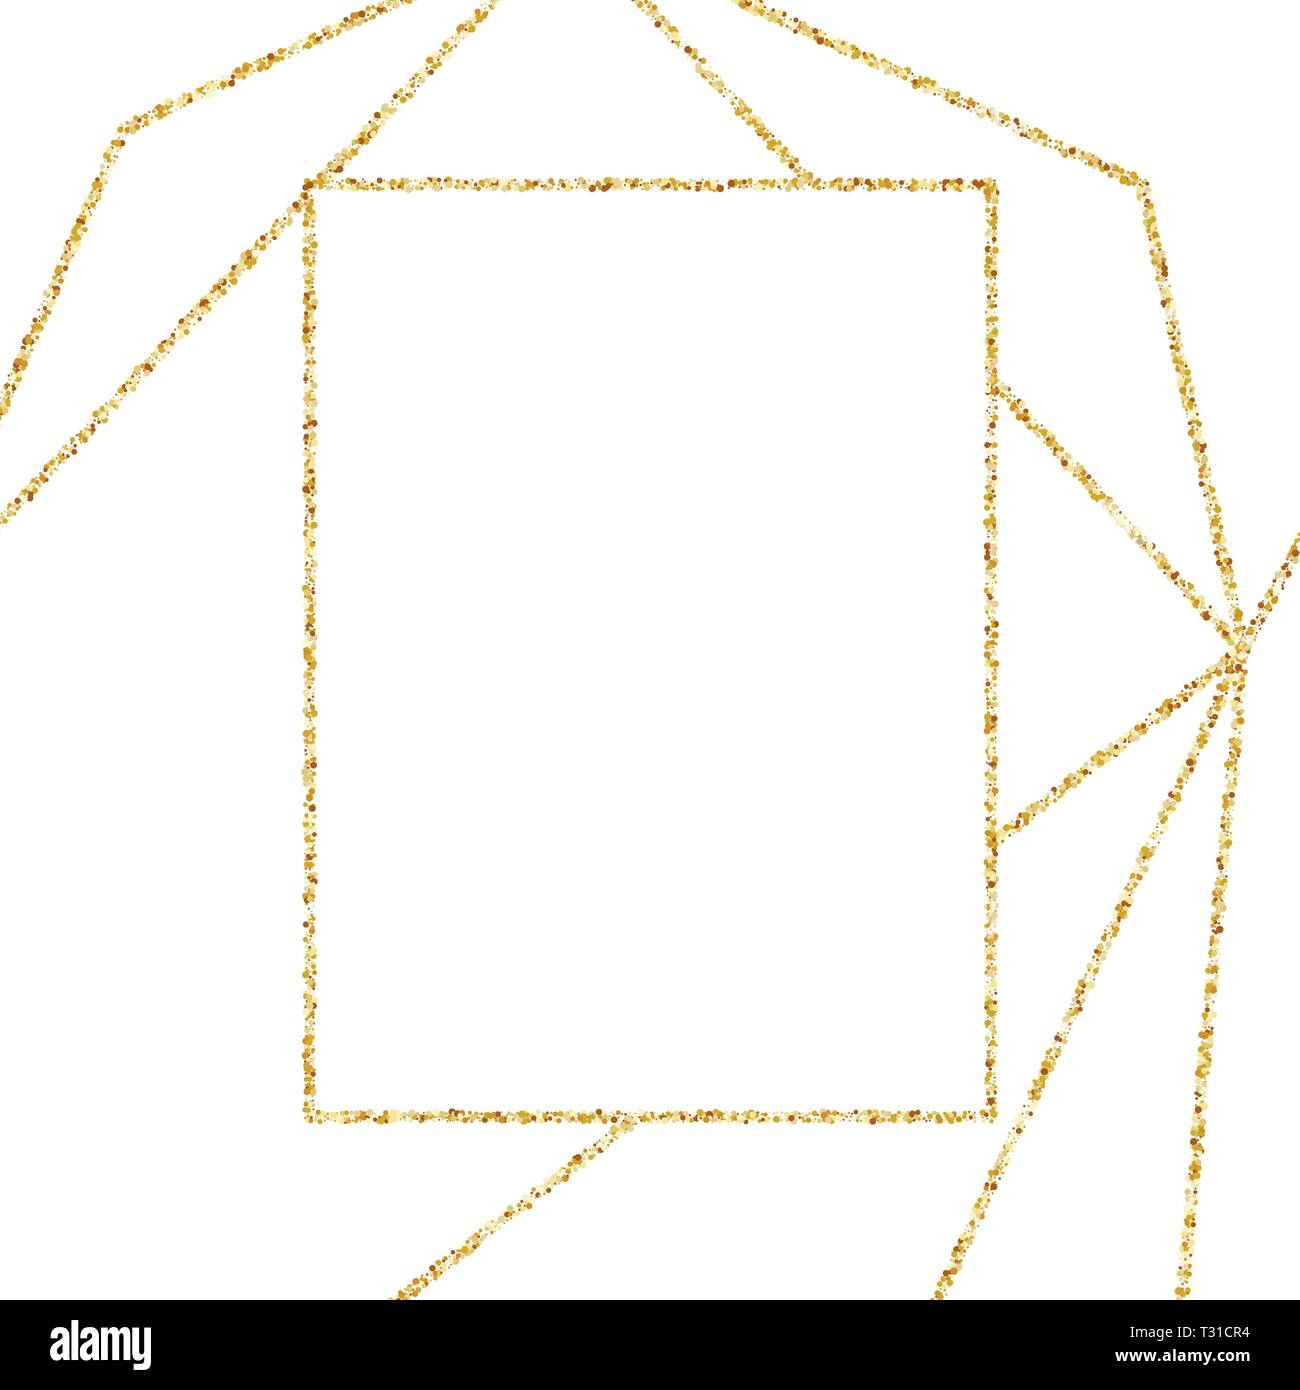 Geometrische Gold Rahmen Fur Hochzeit Oder Geburtstag Einladung Hintergrund Vektor Modernes Design Template Fur Broschure Plakat Oder Greetina Karte Art Deco Stock Vektorgrafik Alamy